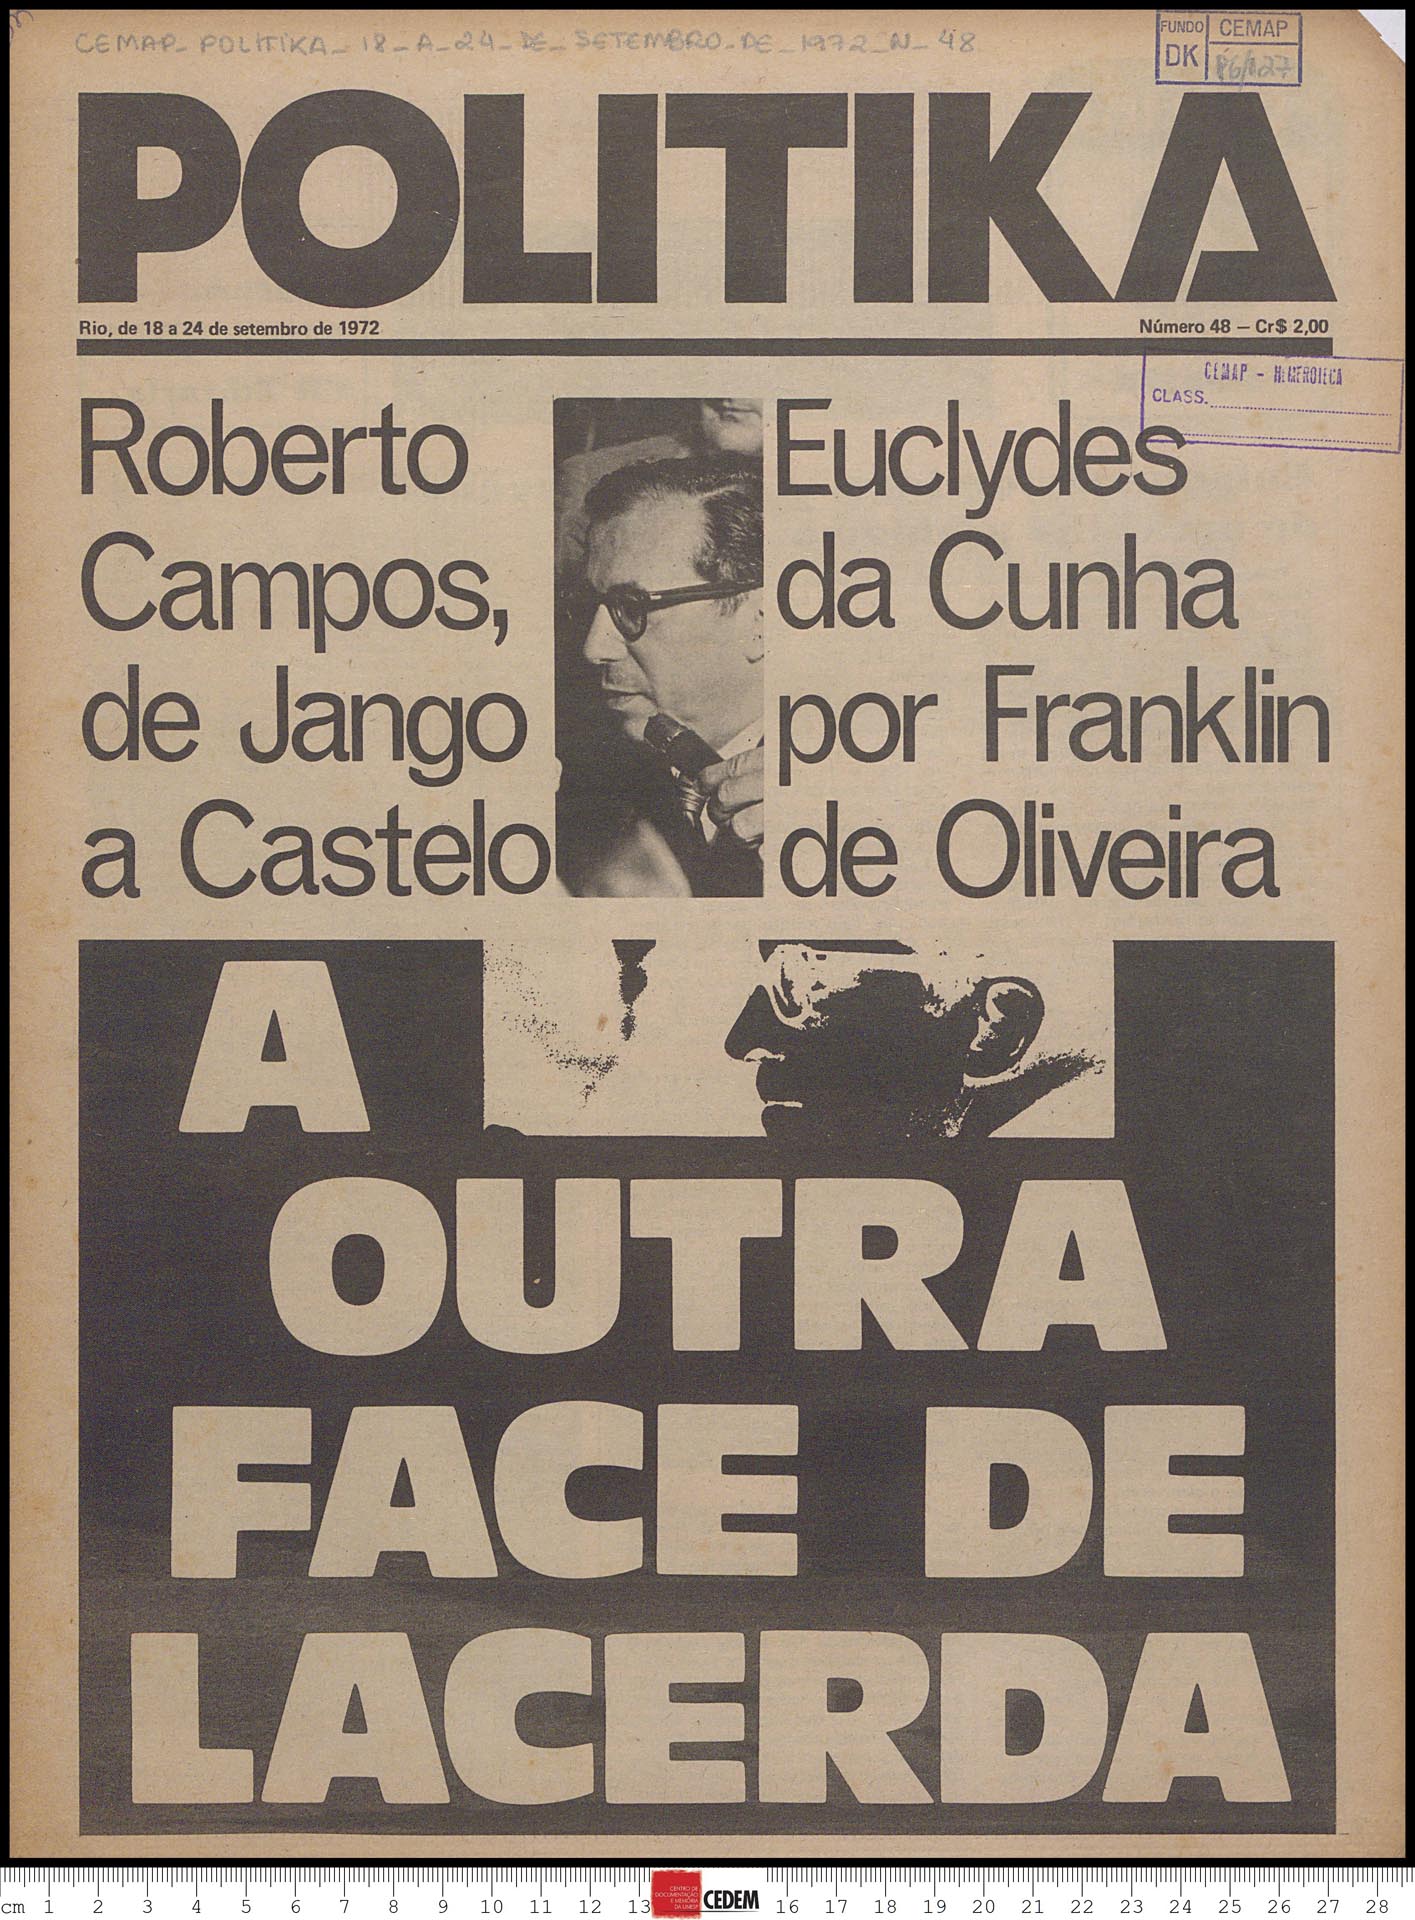 Politika - 48 - 18 a 24 de set. 1972